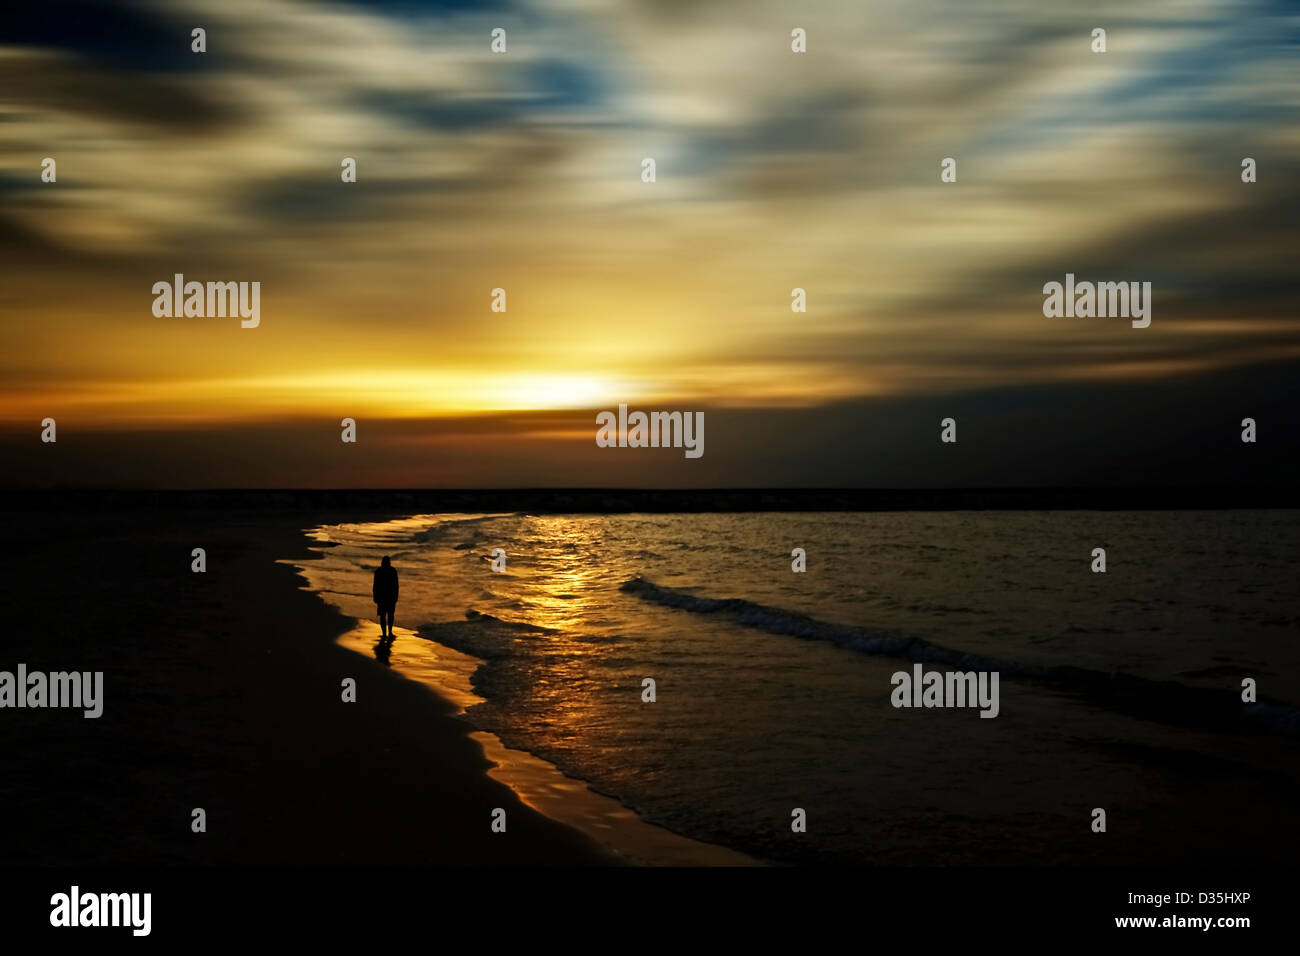 Vue panoramique avec distorsion de paysage et ciel avec chiffres silhouetté Banque D'Images